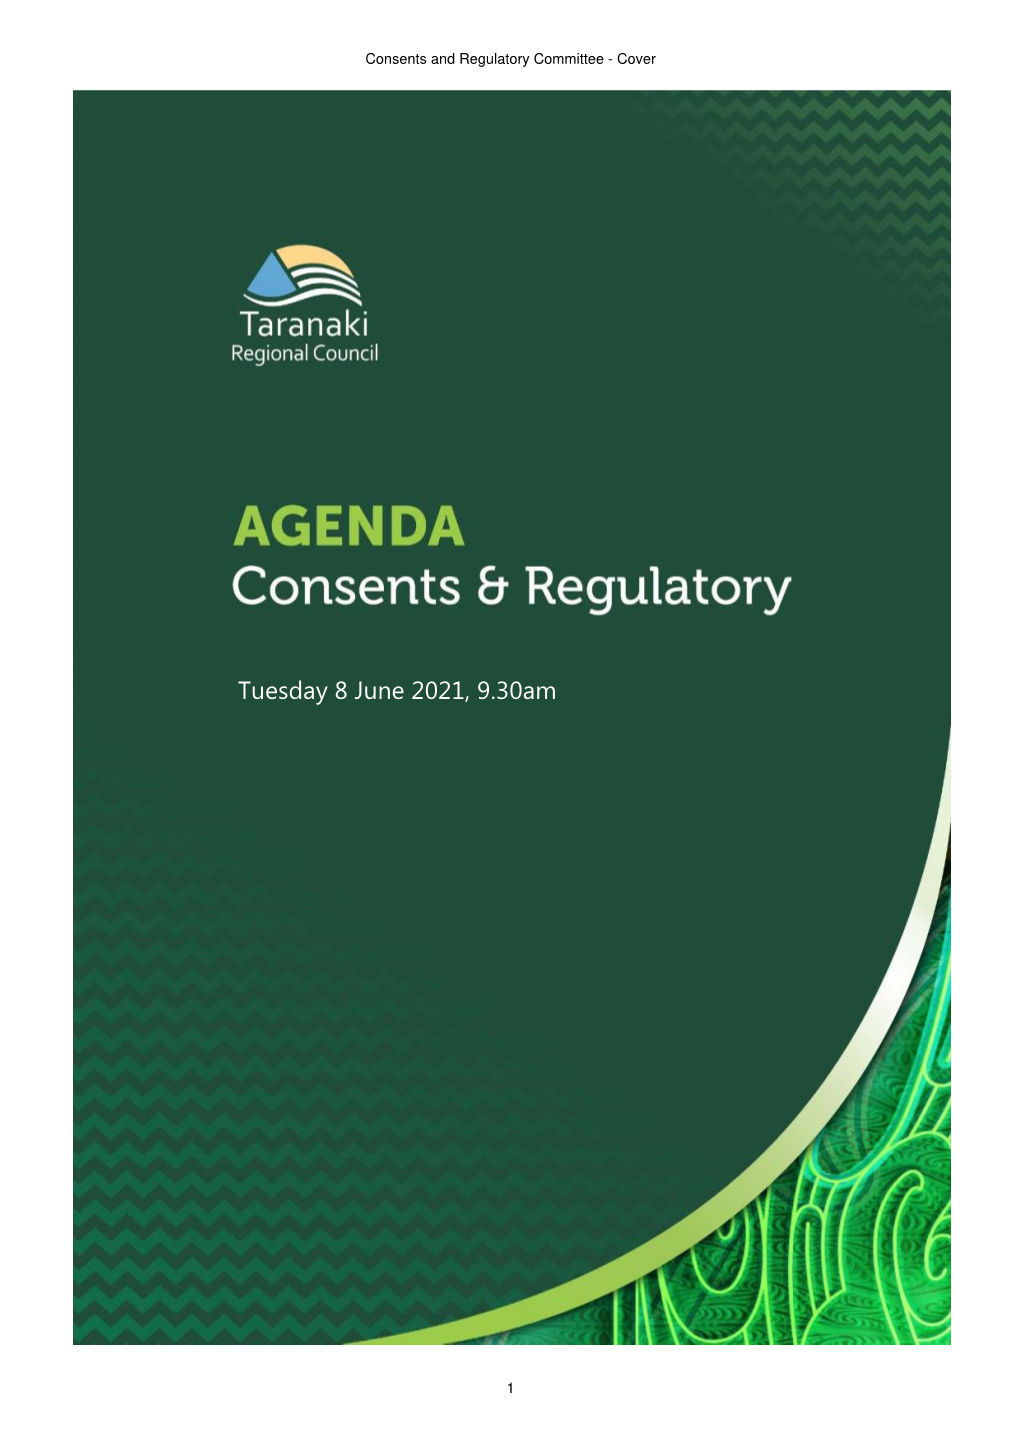 Consents & Regulatory Committee Agenda June 2021